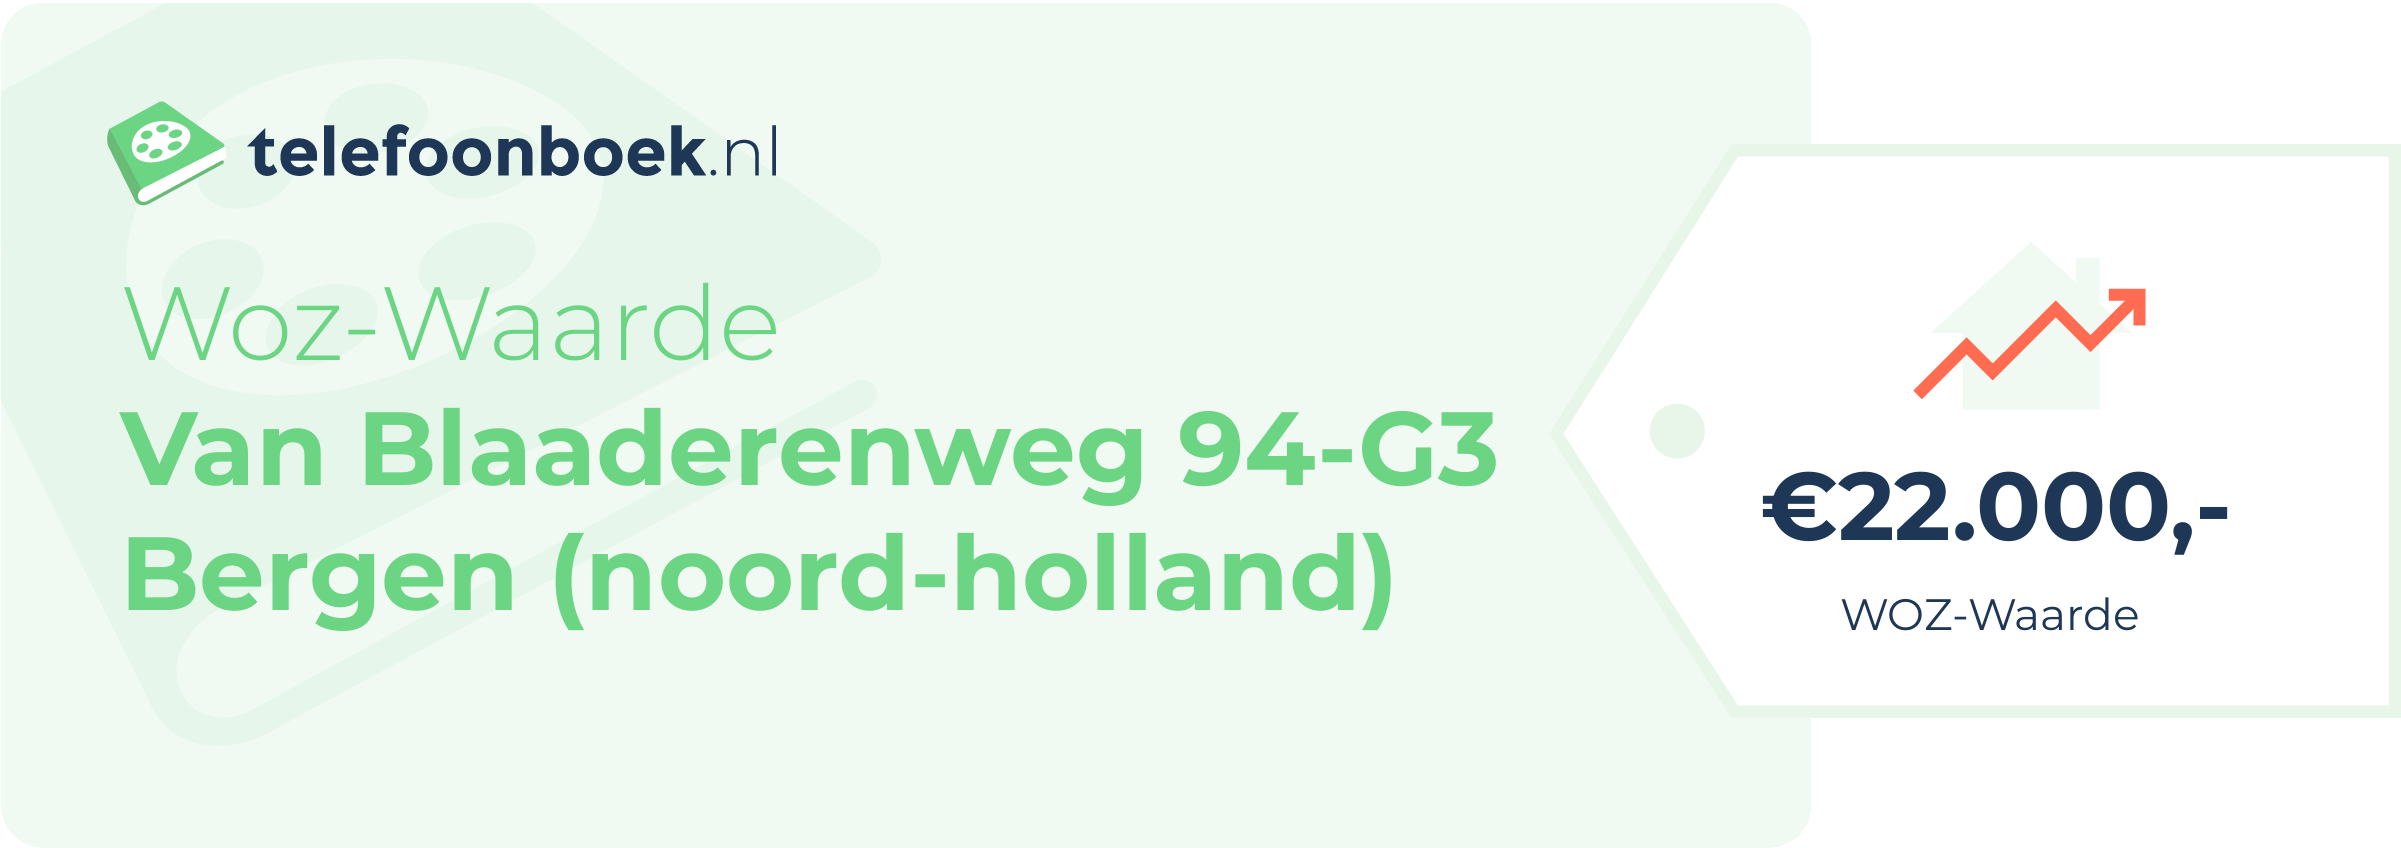 WOZ-waarde Van Blaaderenweg 94-G3 Bergen (Noord-Holland)